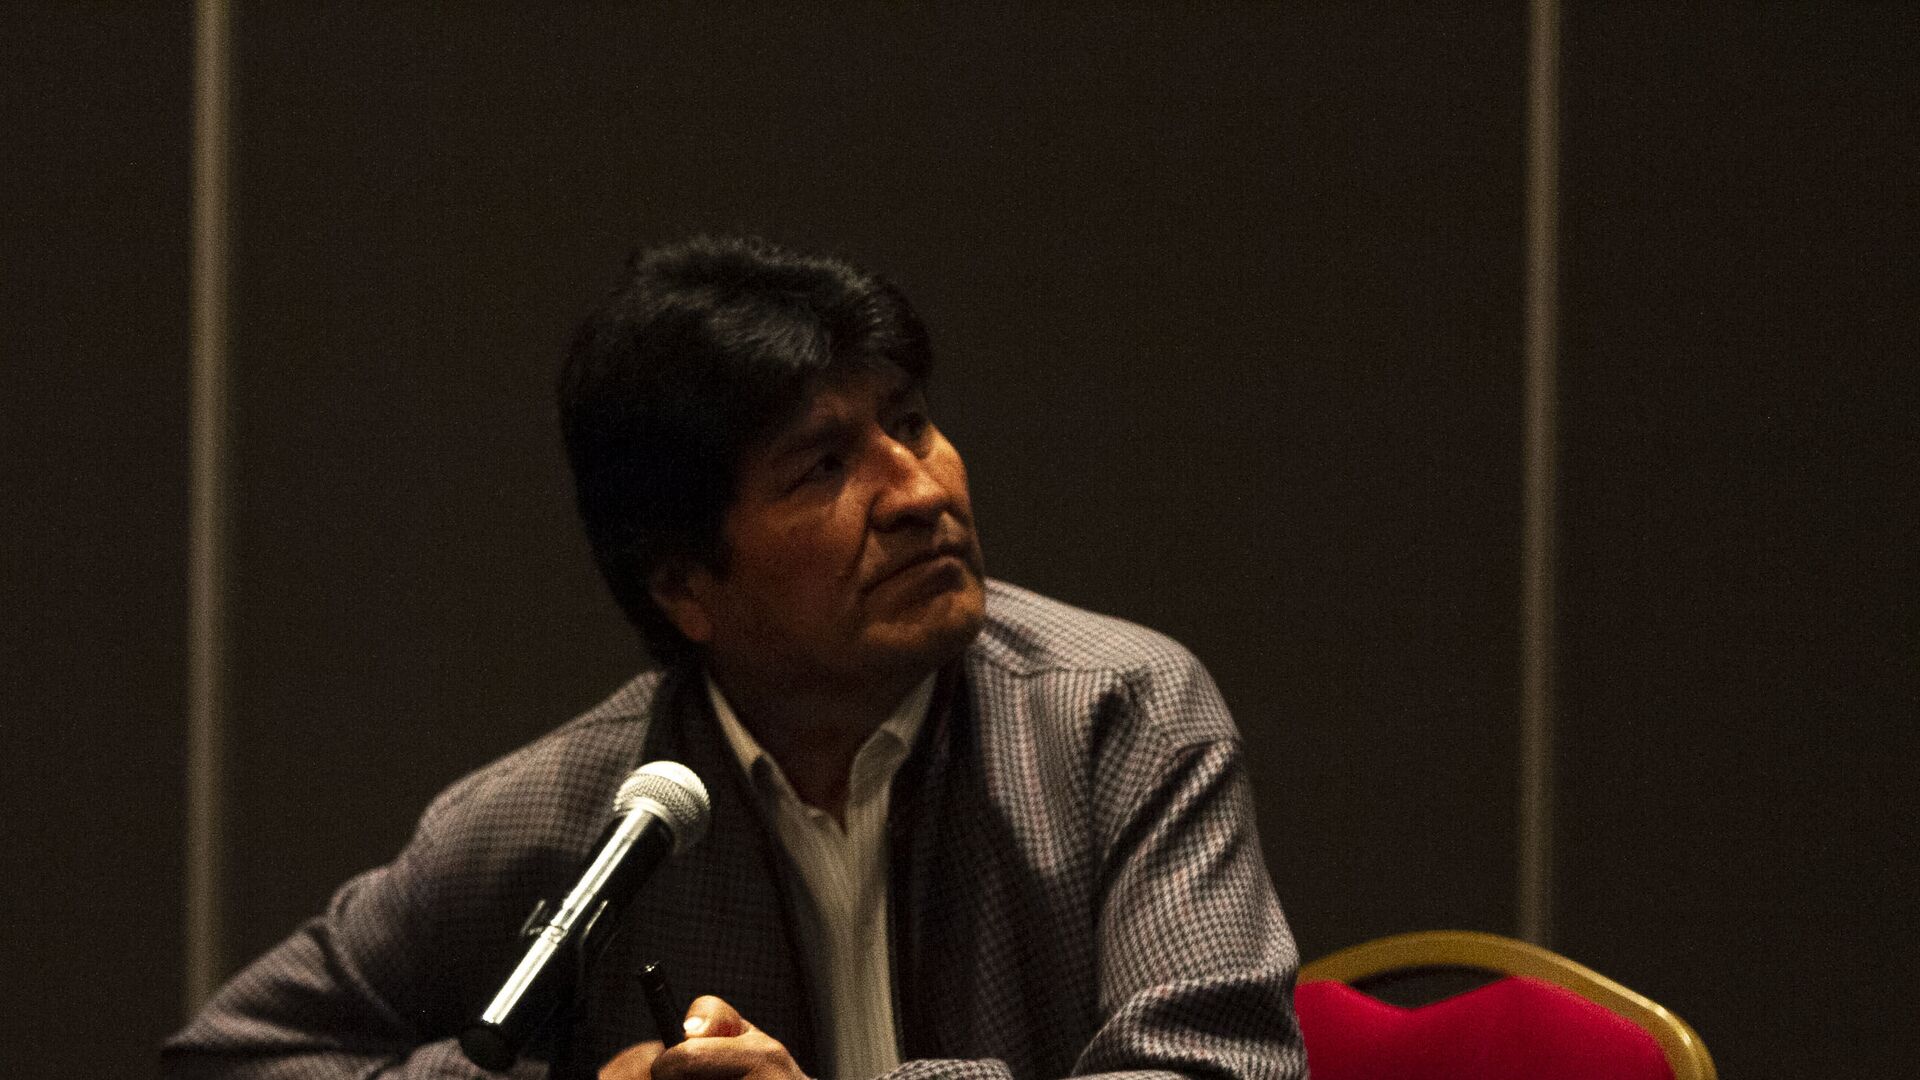 Evo Morales ofrece una rueda de prensa en la Ciudad de México, el 20 de noviembre de 2019 - Sputnik Mundo, 1920, 14.07.2021